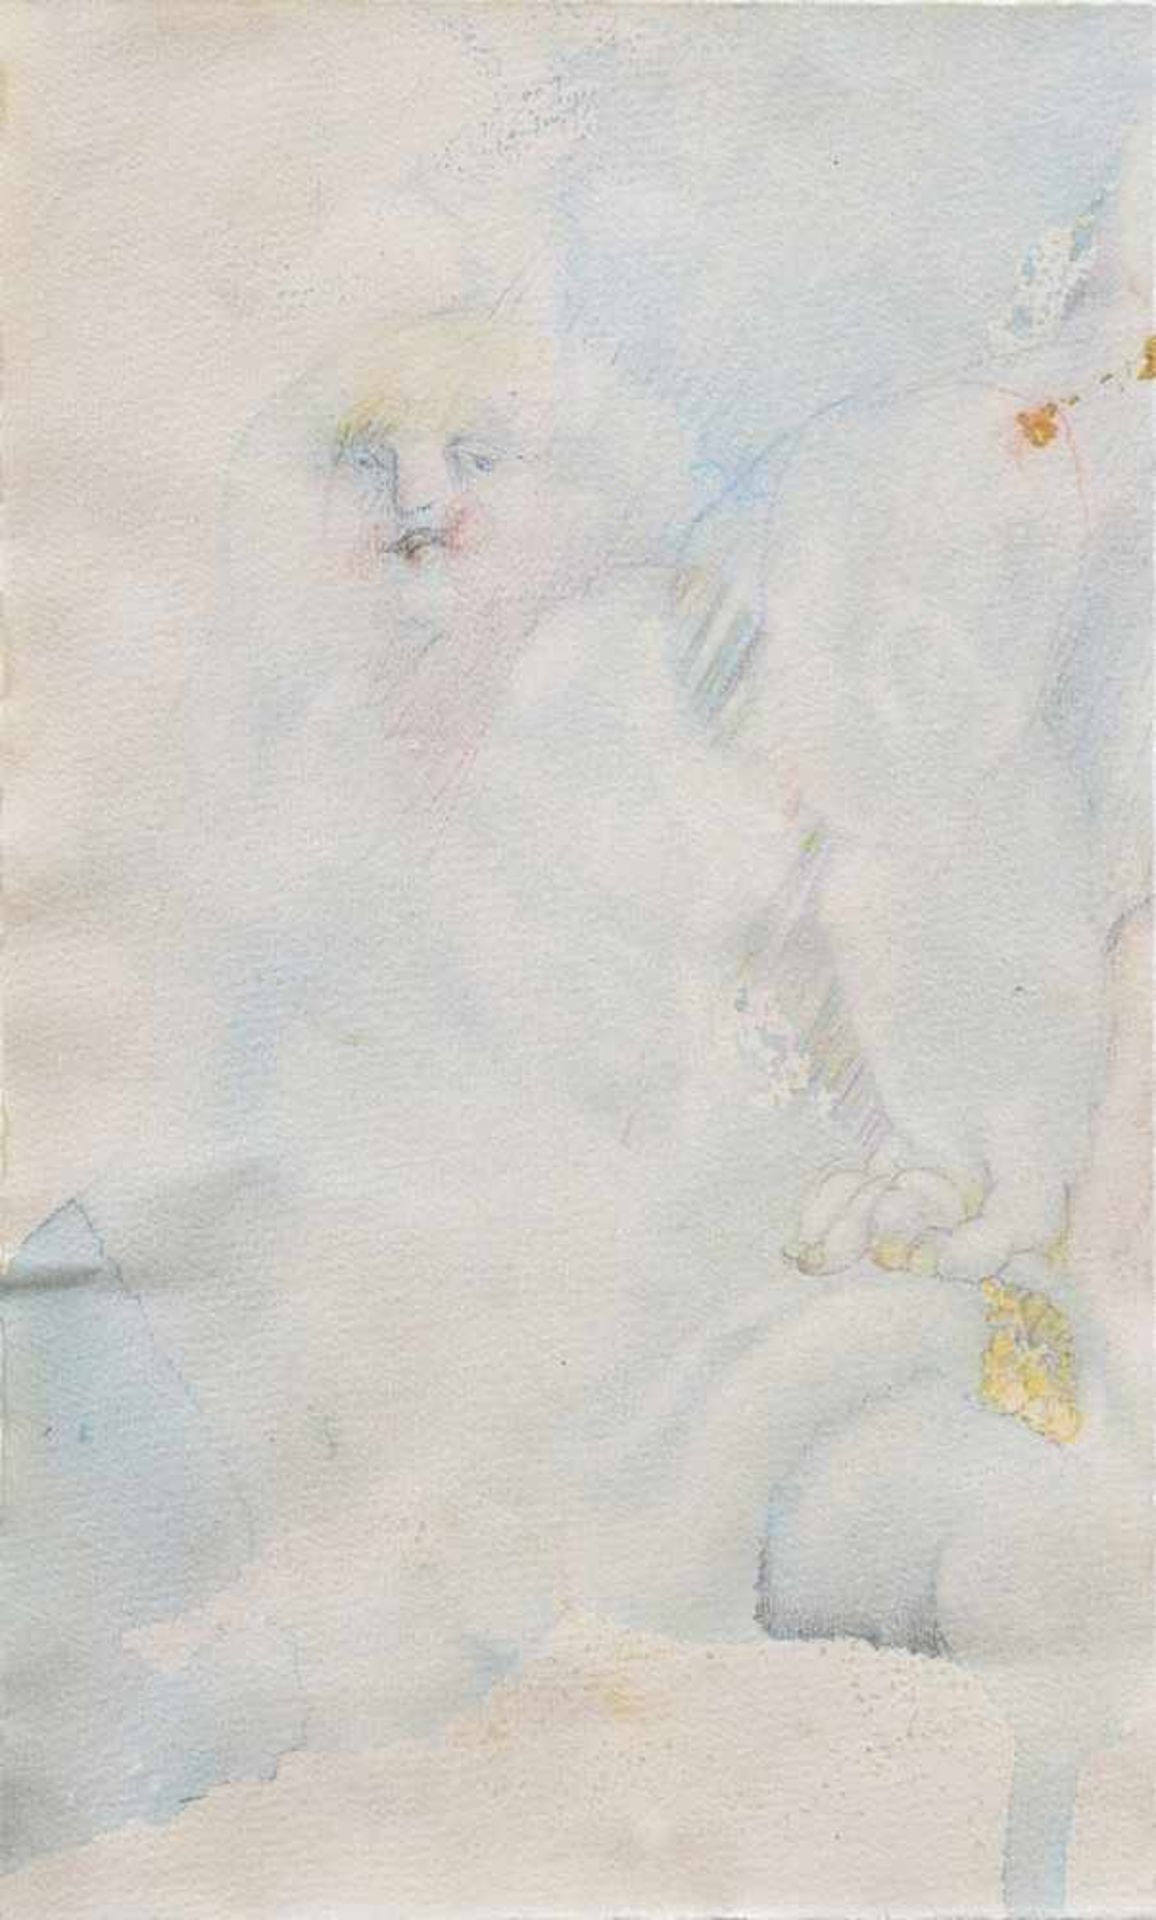 Unbekannter Künstler des 20.Jh. "Frauenakt", Aquarell/Papier, 24,5x15cm (m.R. 49,5x39cm)Unknown